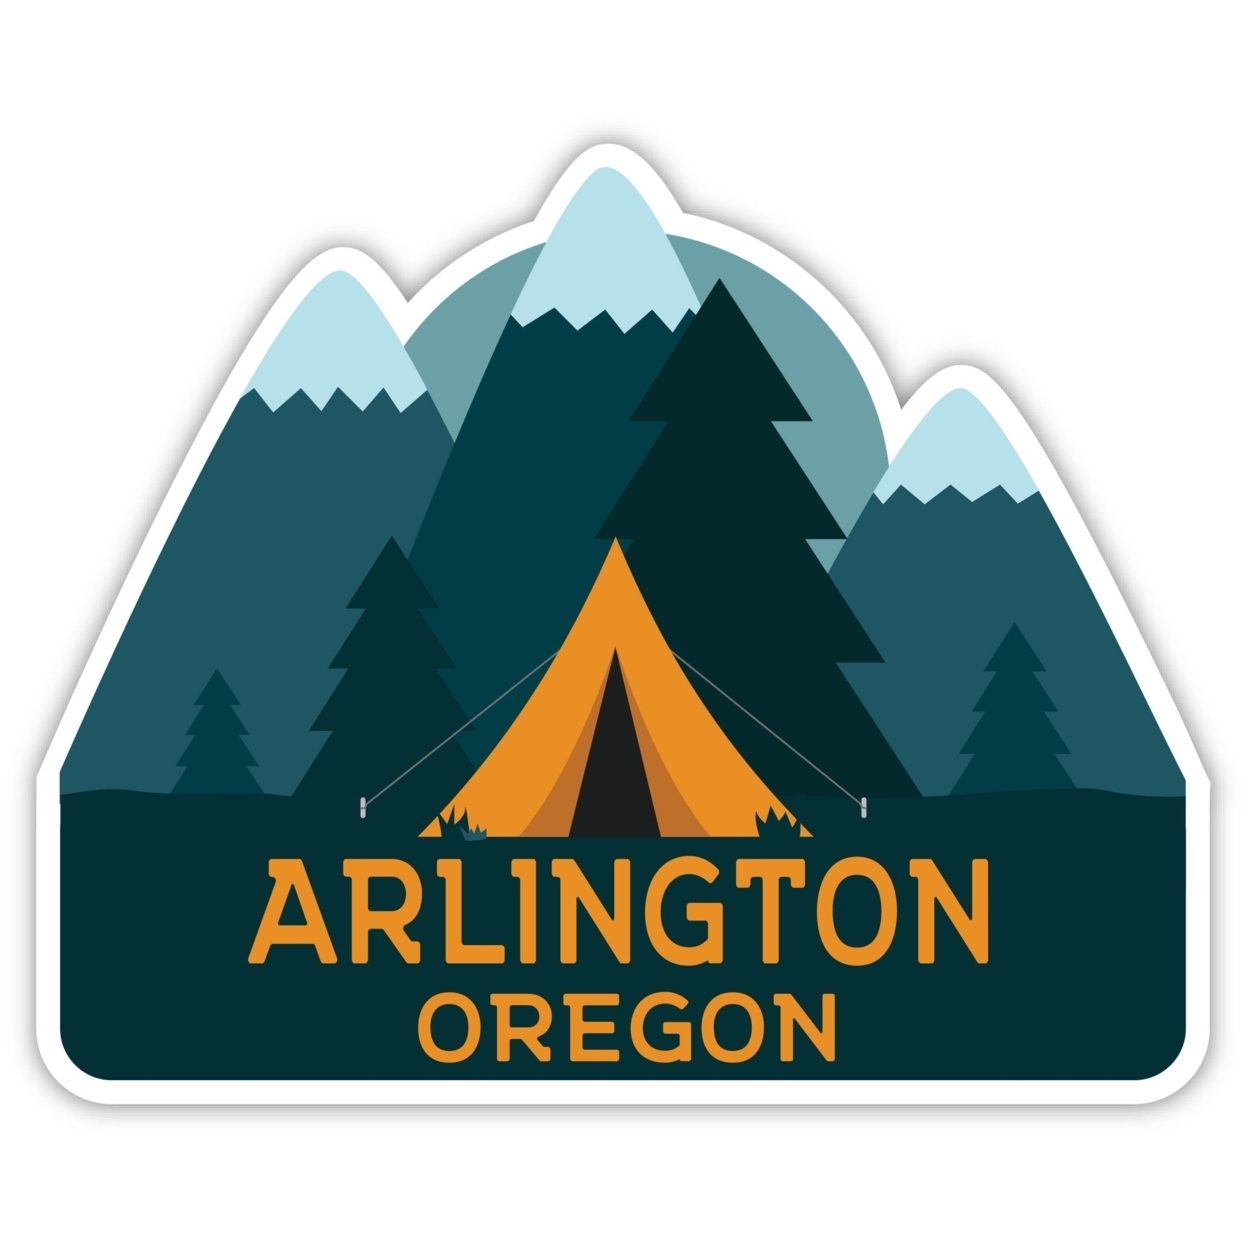 Arlington Oregon Souvenir Decorative Stickers (Choose Theme And Size) - 4-Pack, 6-Inch, Tent